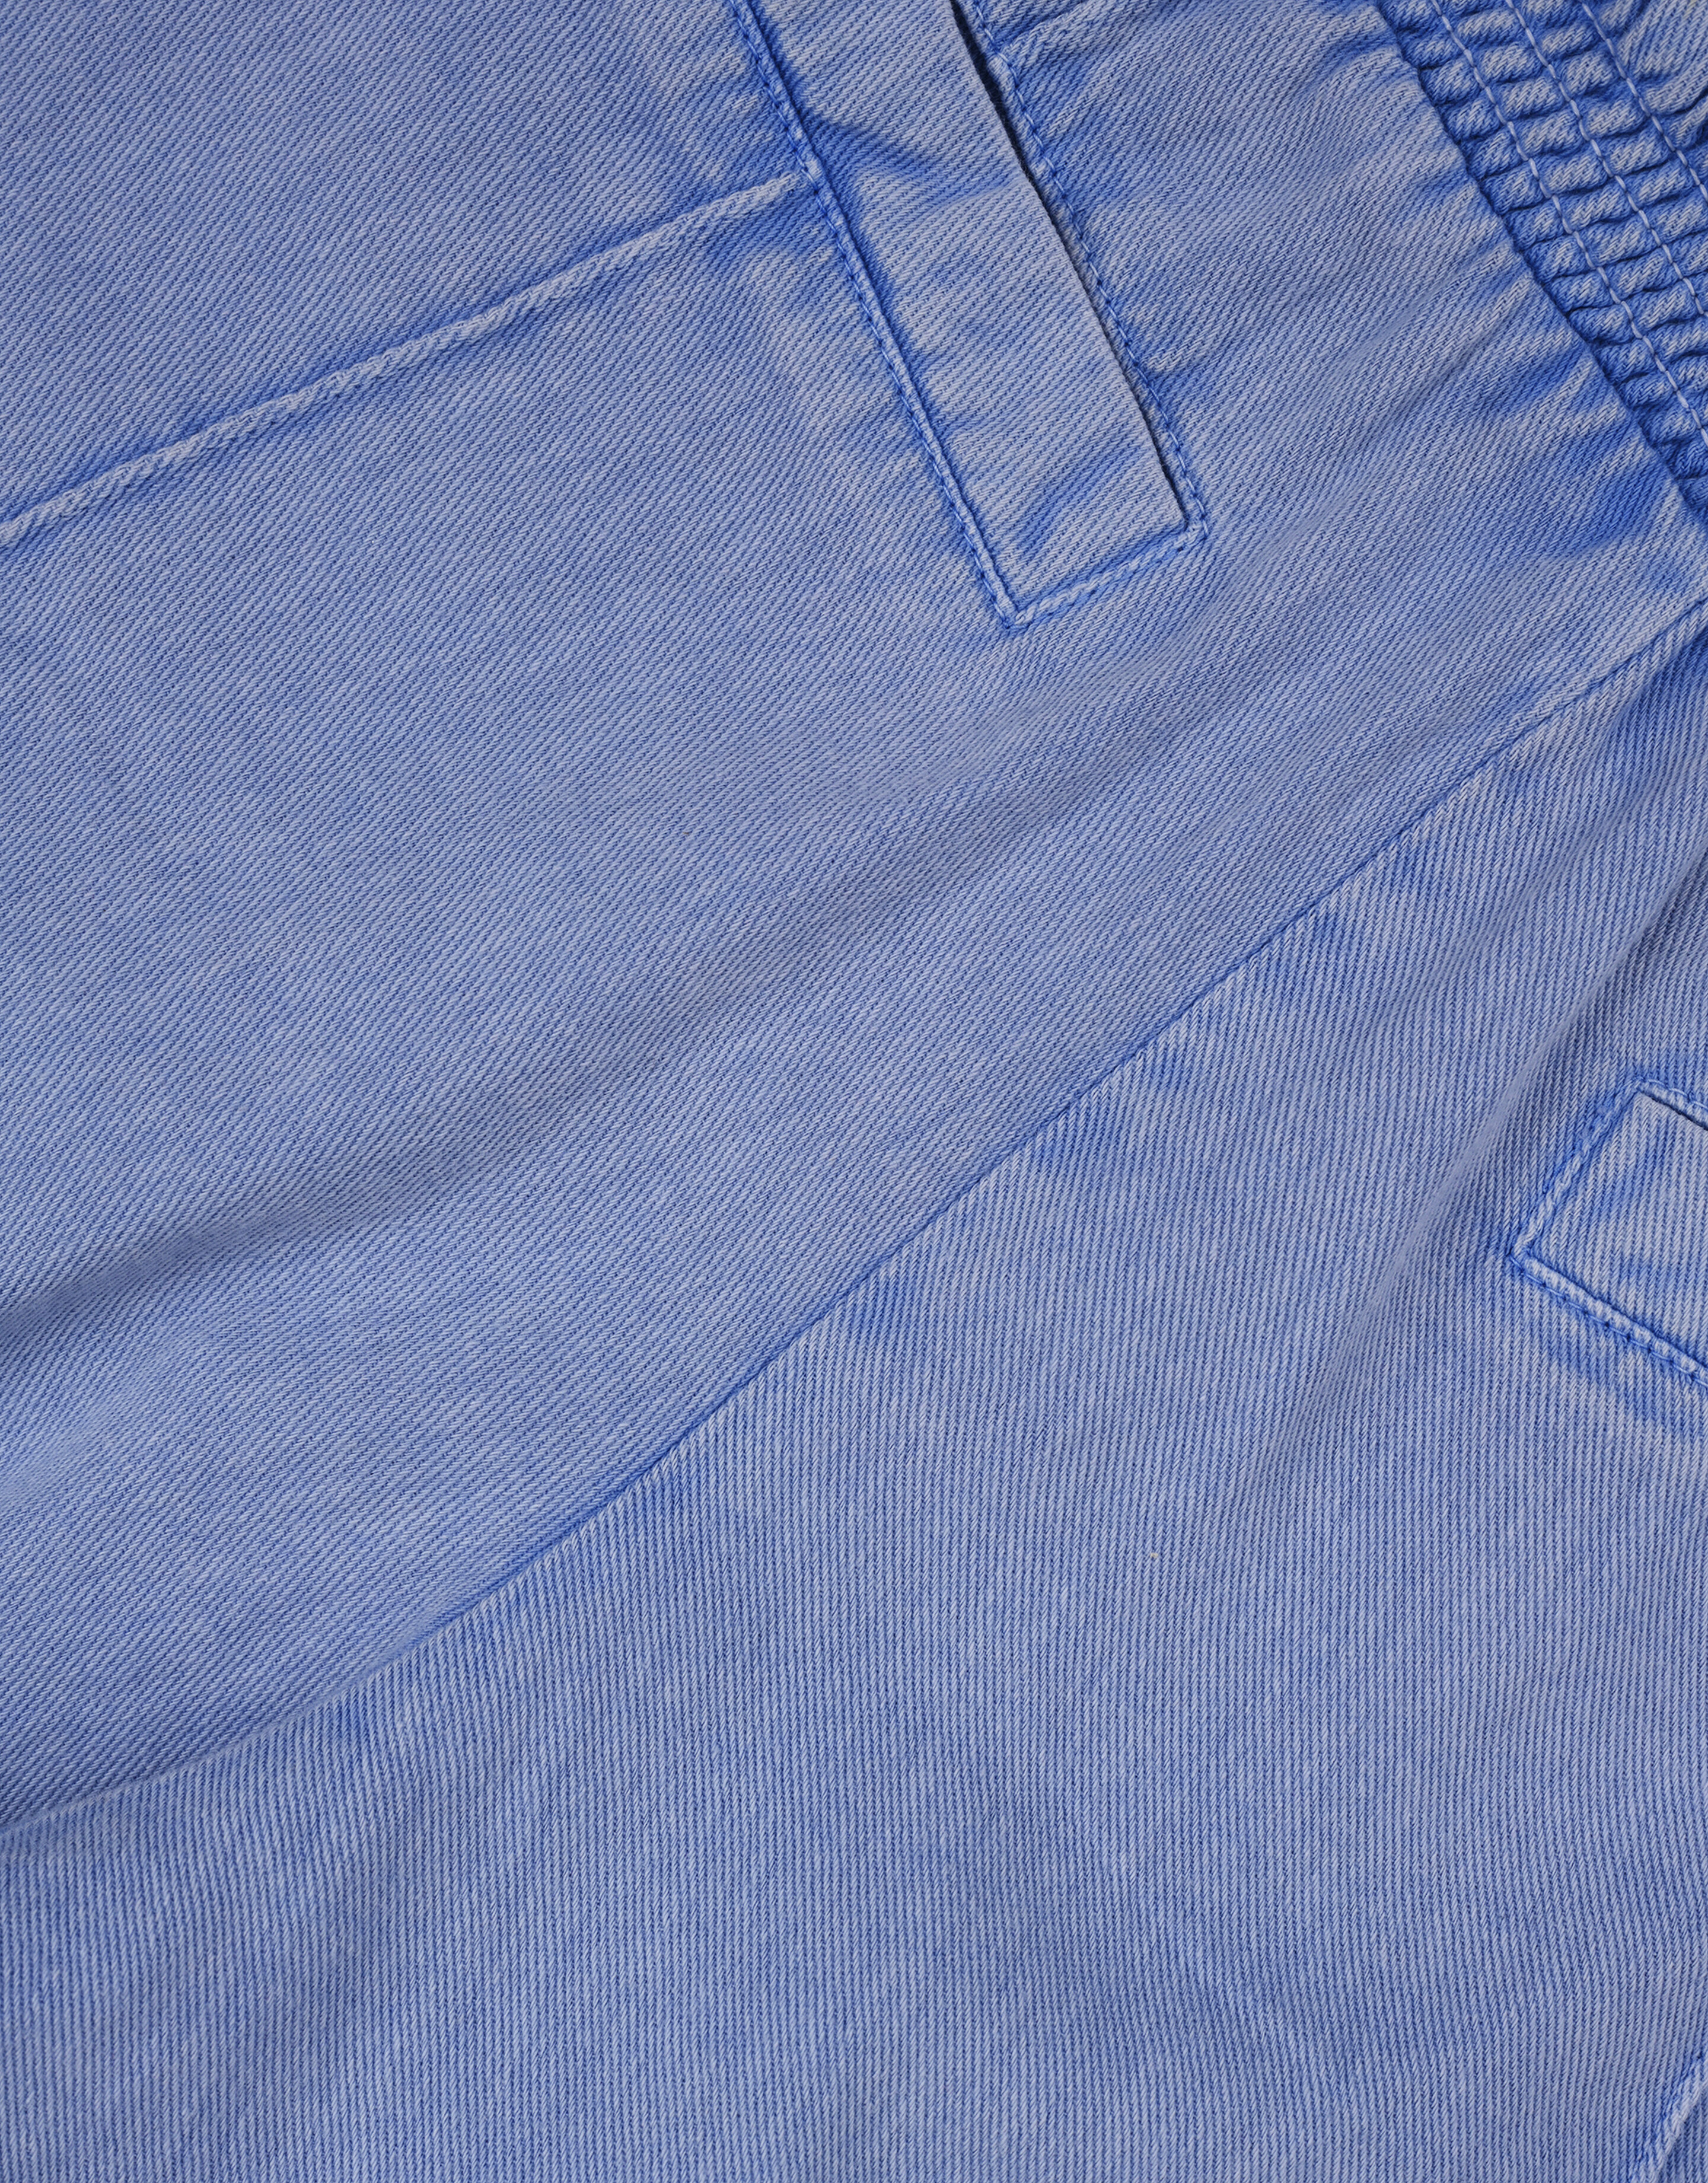 Denim Soft Shorts | JILL&MITCH